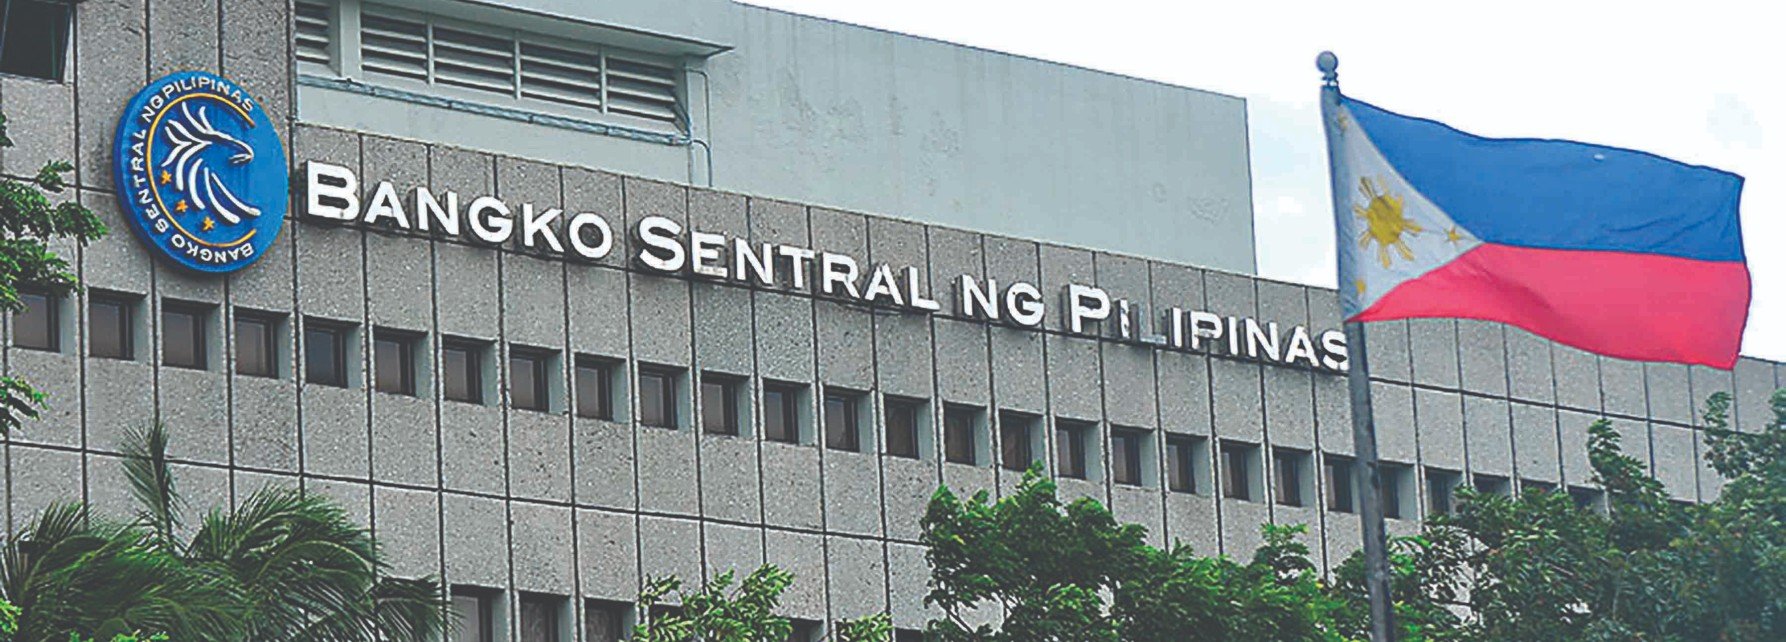 Bangko Sentral Ng Pilipinas Graduate Programs Prosple 4287